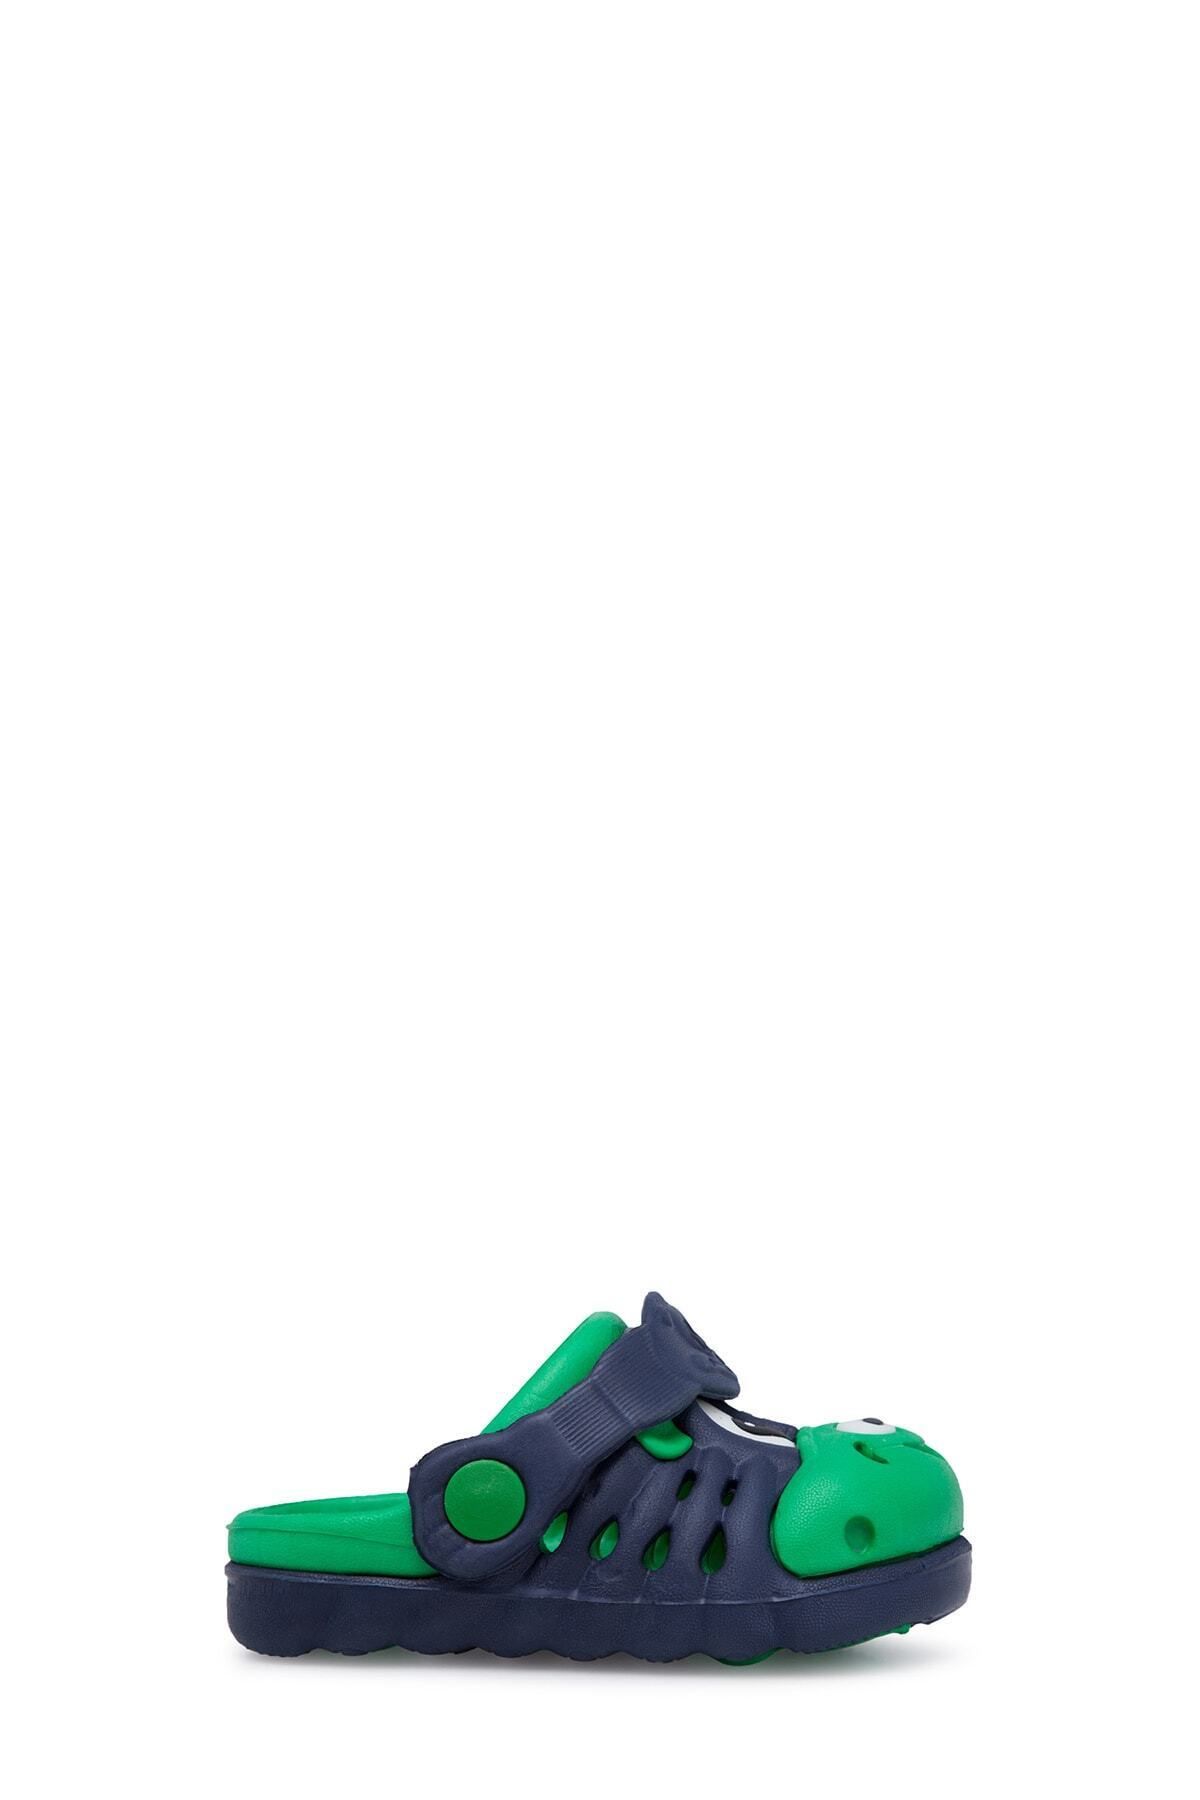 Akınal Bella Unisex Çocuk Lacivert Yeşil Sandalet E146000P